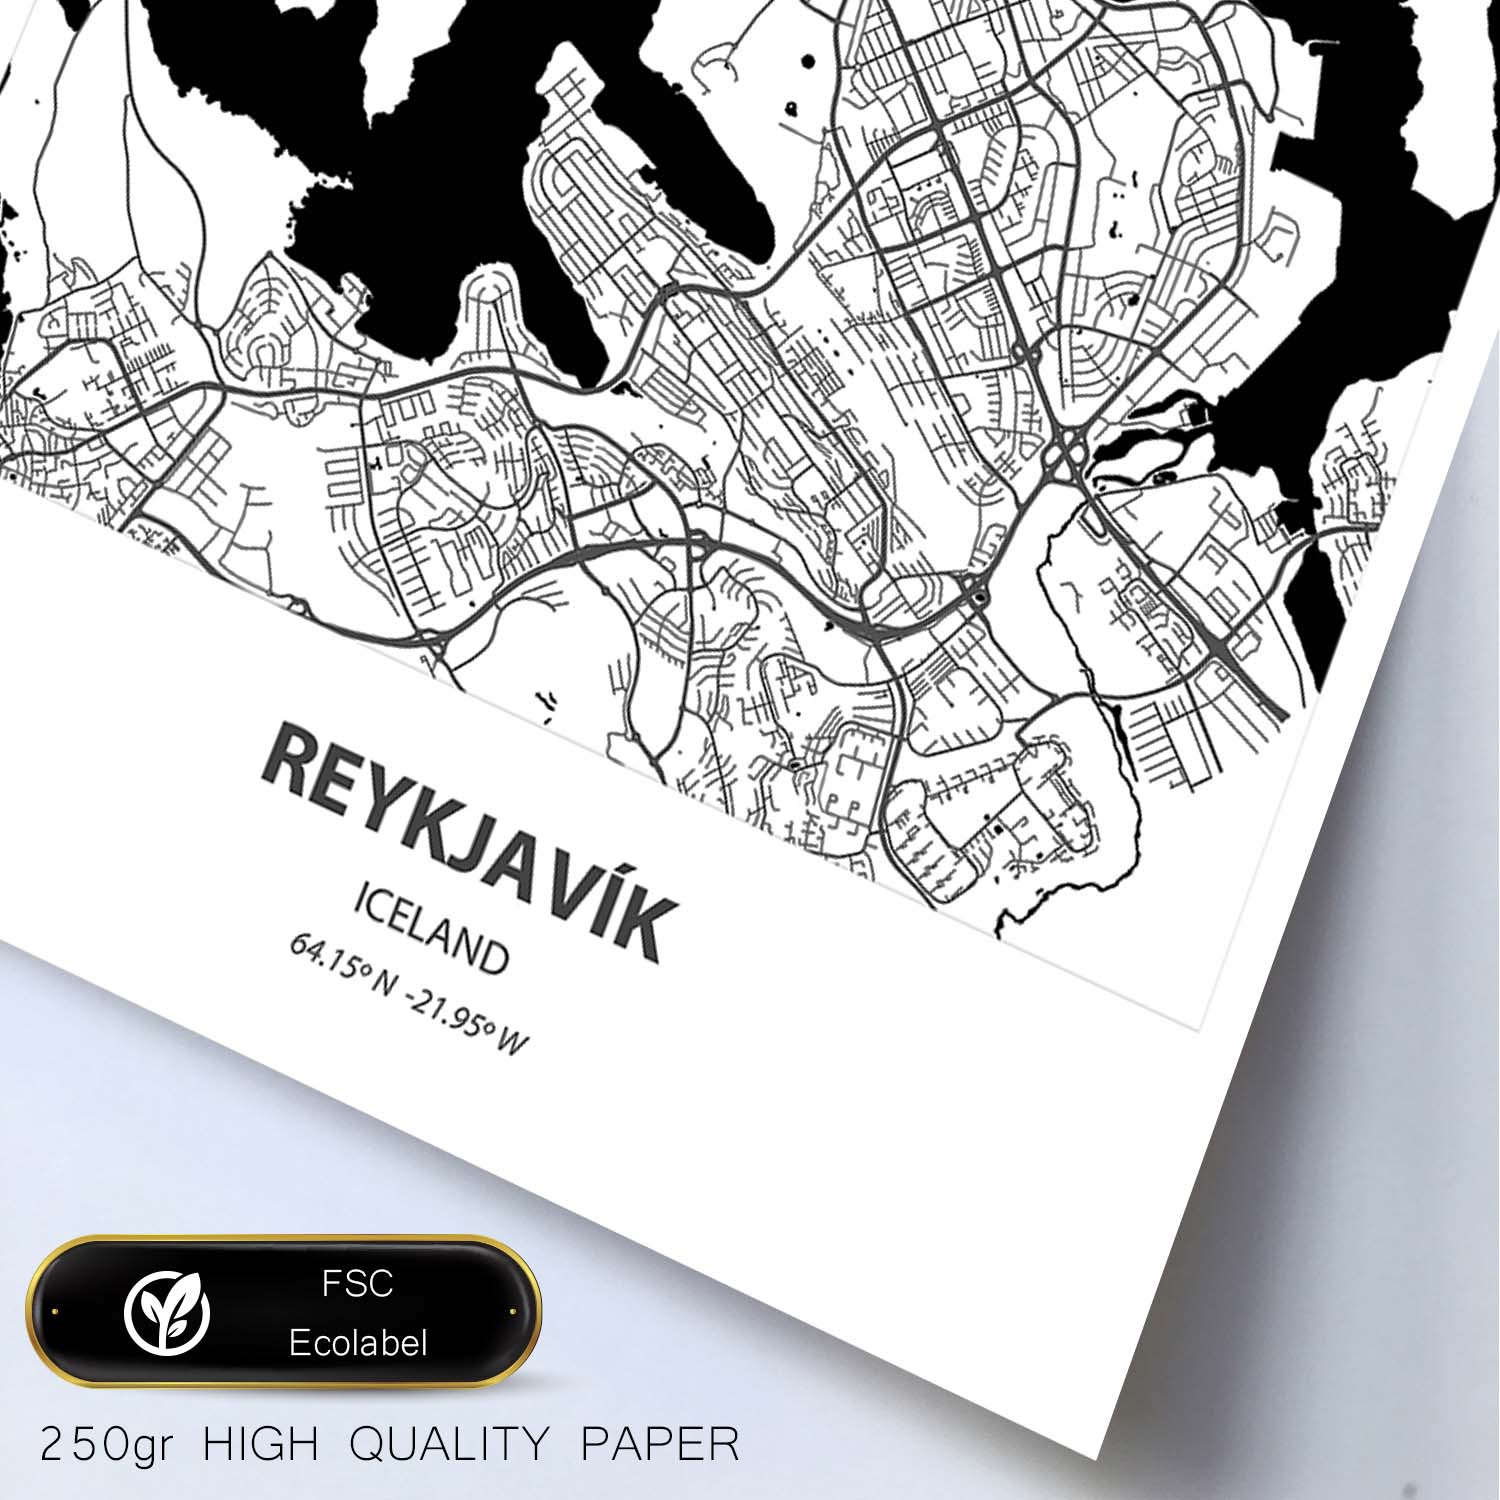 Poster con mapa de Reykjavik - Islandia. Láminas de ciudades del norte de Europa con mares y ríos en color negro.-Artwork-Nacnic-Nacnic Estudio SL